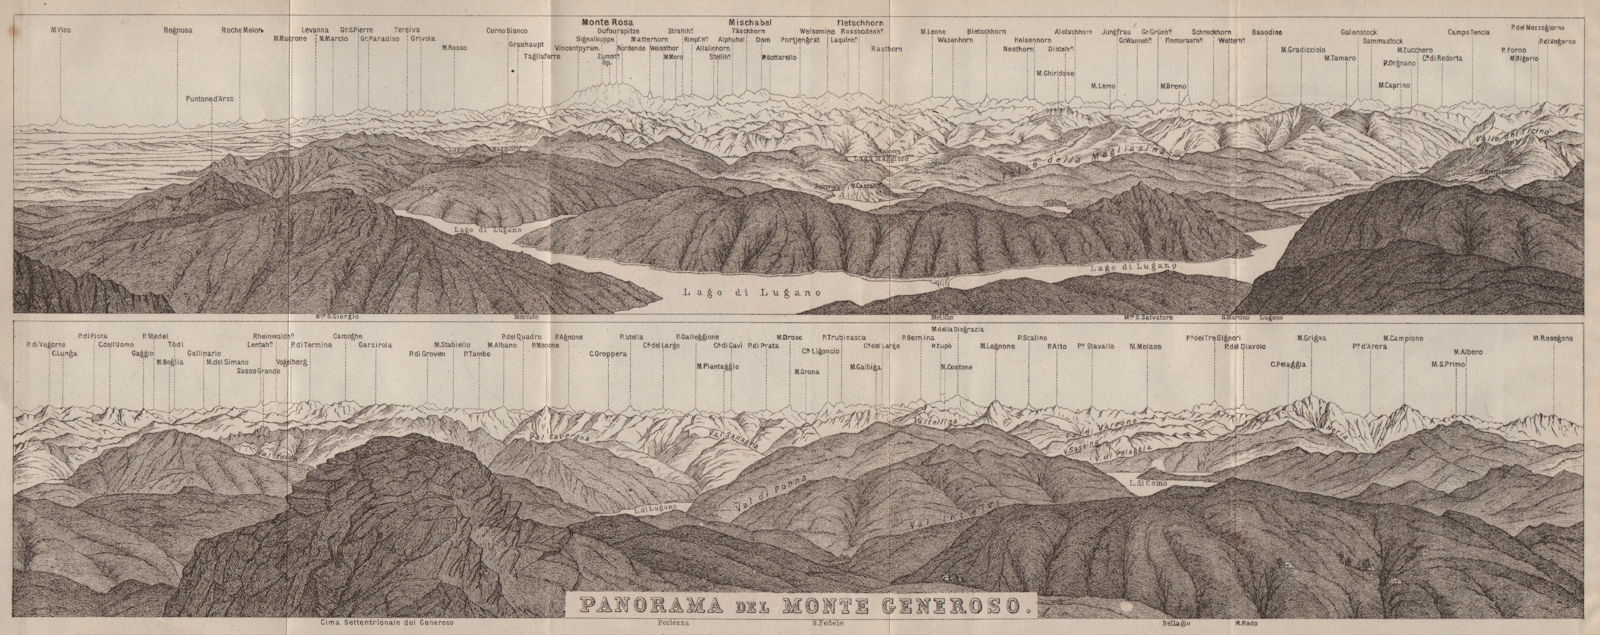 MONTE GENEROSO PANORAMA. Lugano Como Maggiore Rosa Mischabel Disgrazia 1922 map